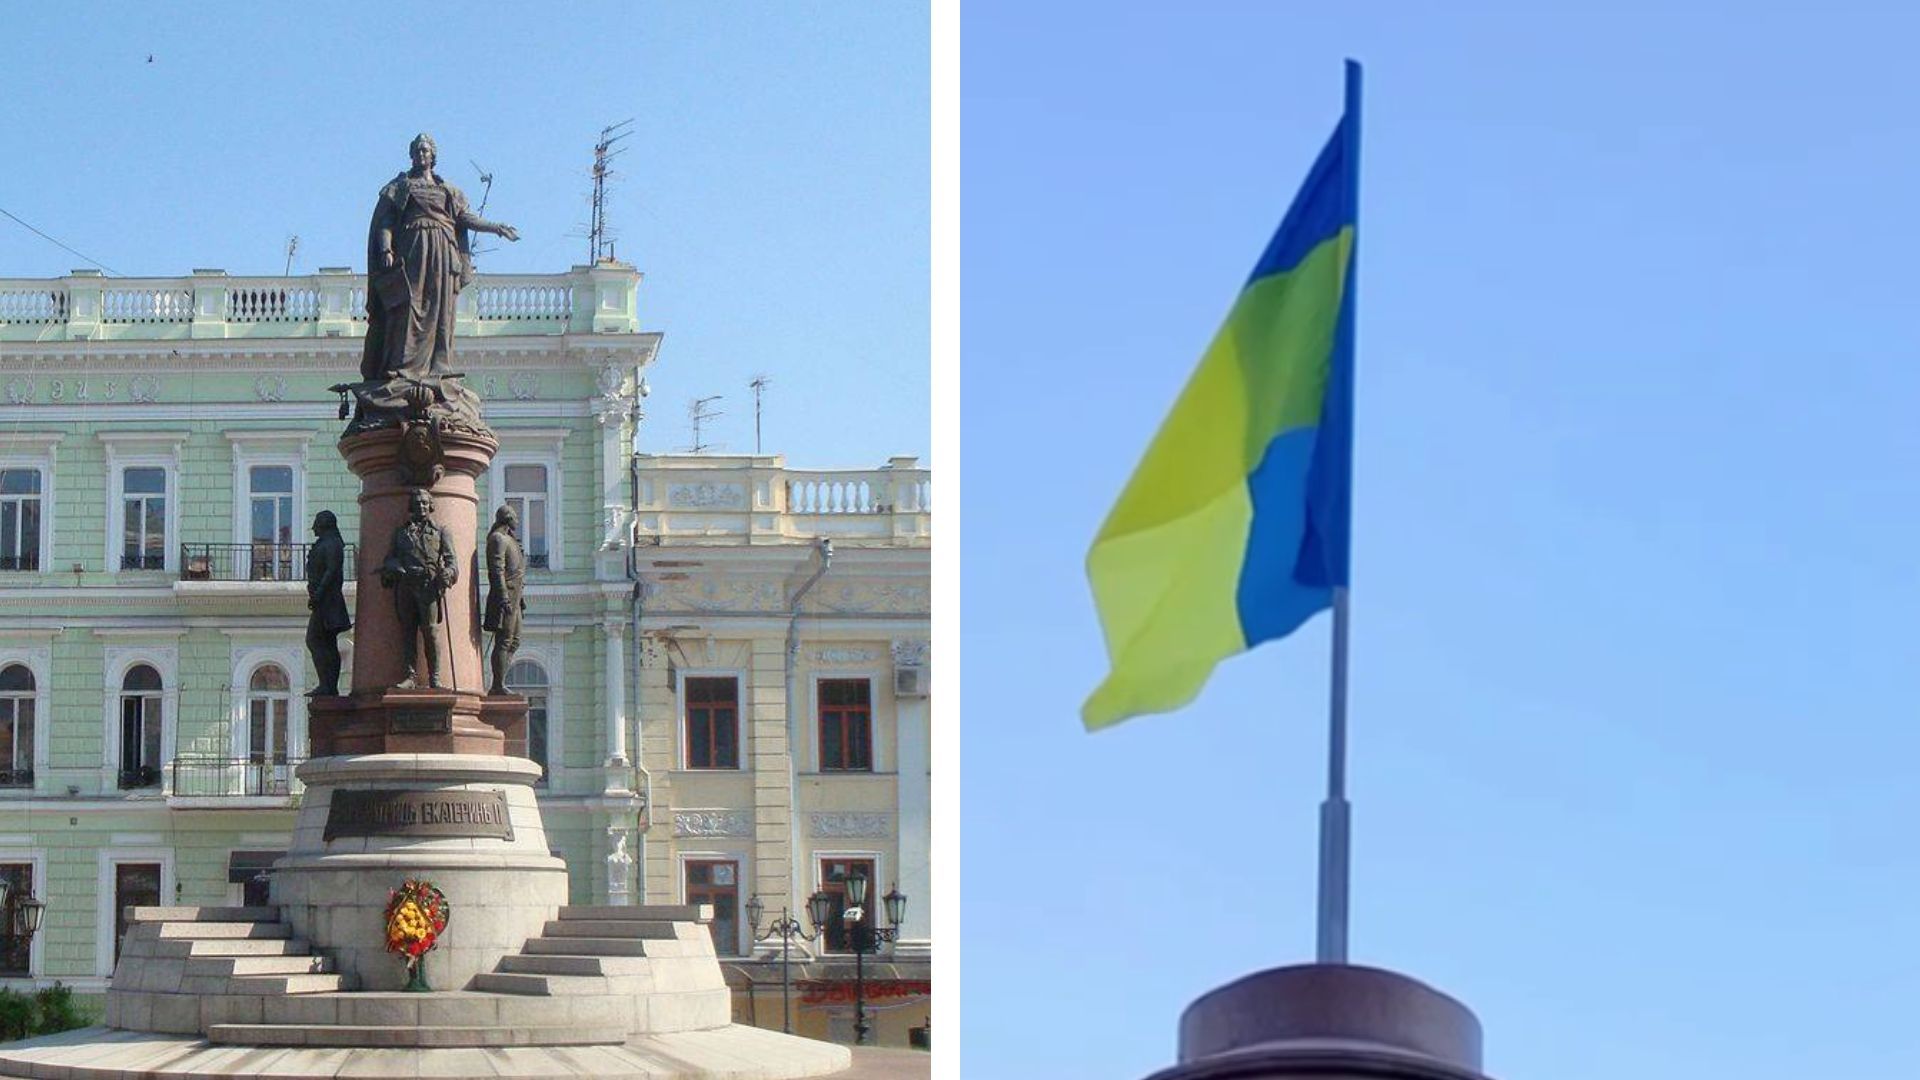 Пам'ятник Катерині ІІ в Одесі знесли - що там відбувається 29 грудня 2022 